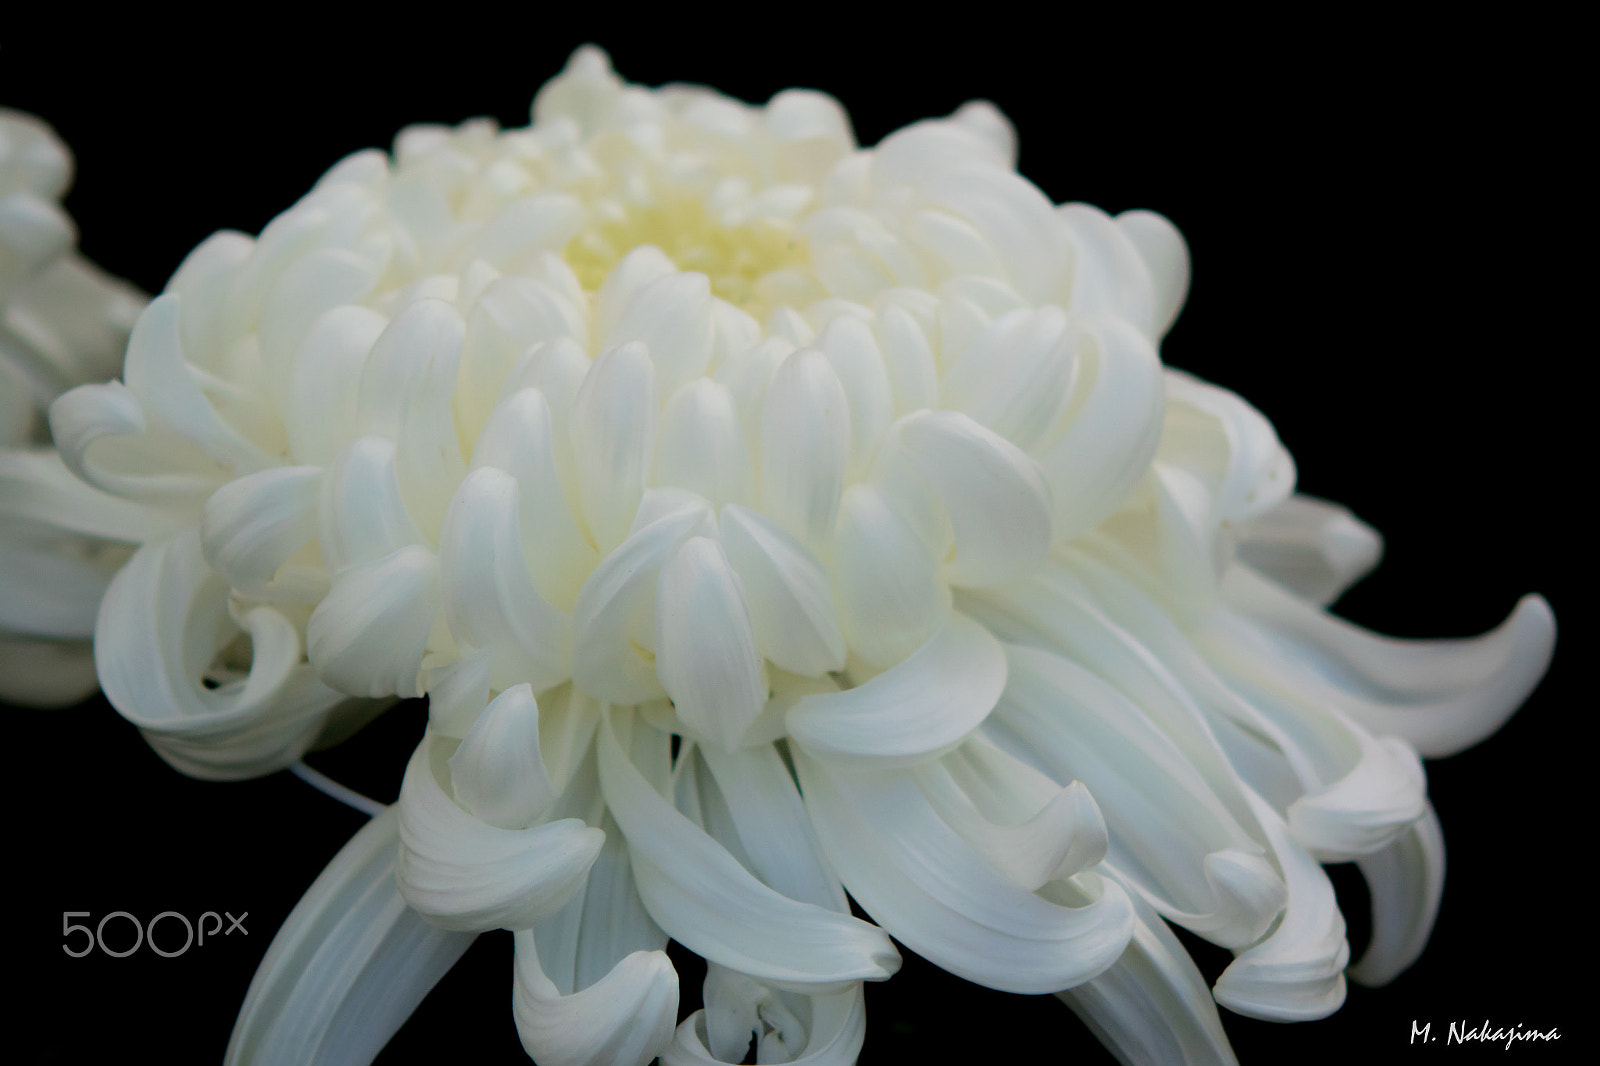 Nikon 1 V3 sample photo. Chrysanthemum -2 photography